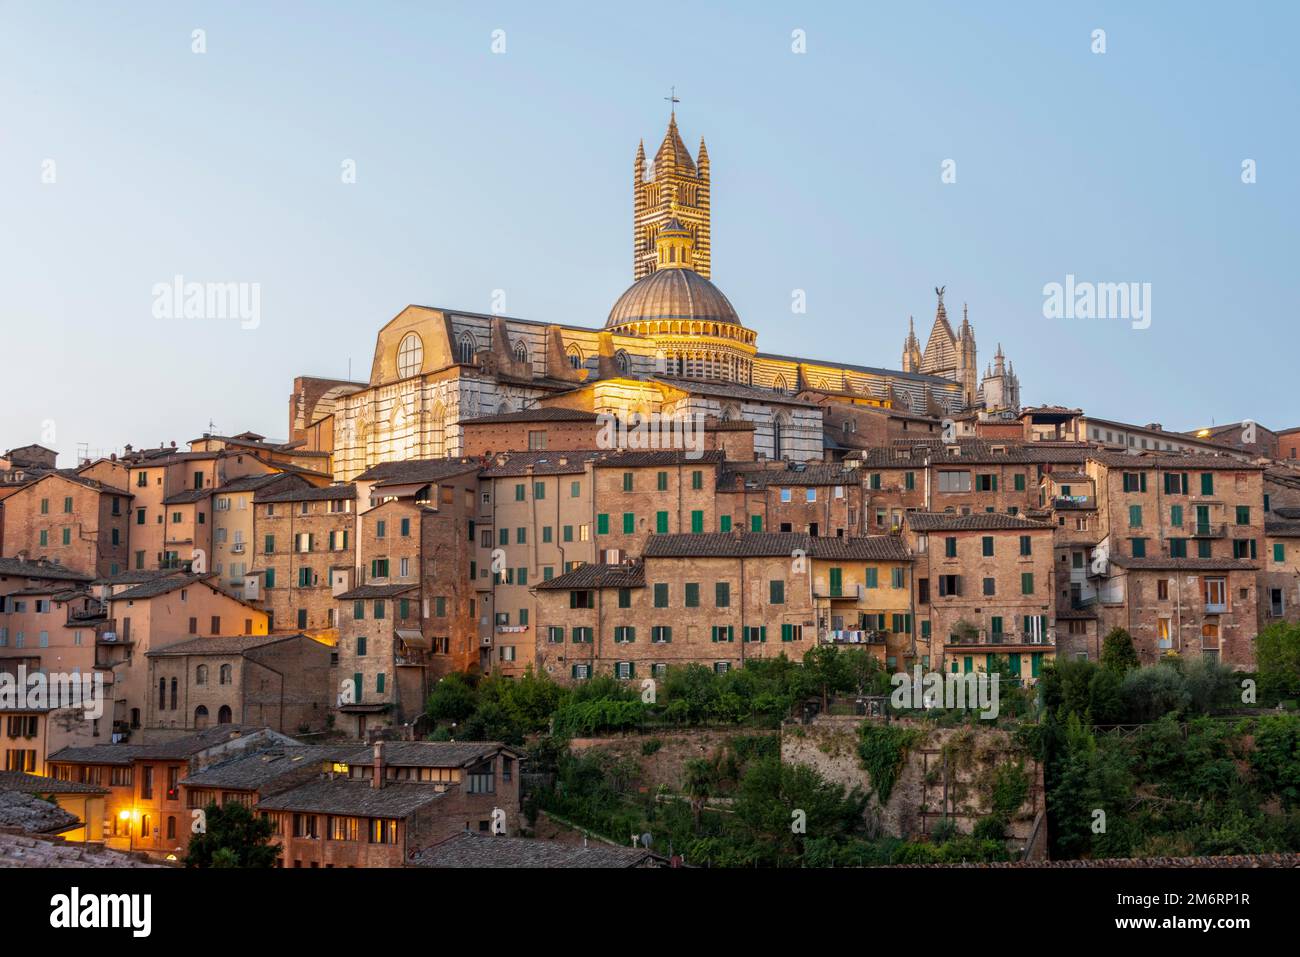 Kathedrale von Siena bei Sonnenaufgang, gotischer Architekturstil, vor ihr Häuser der Altstadt, Siena, Toskana, Italien Stockfoto